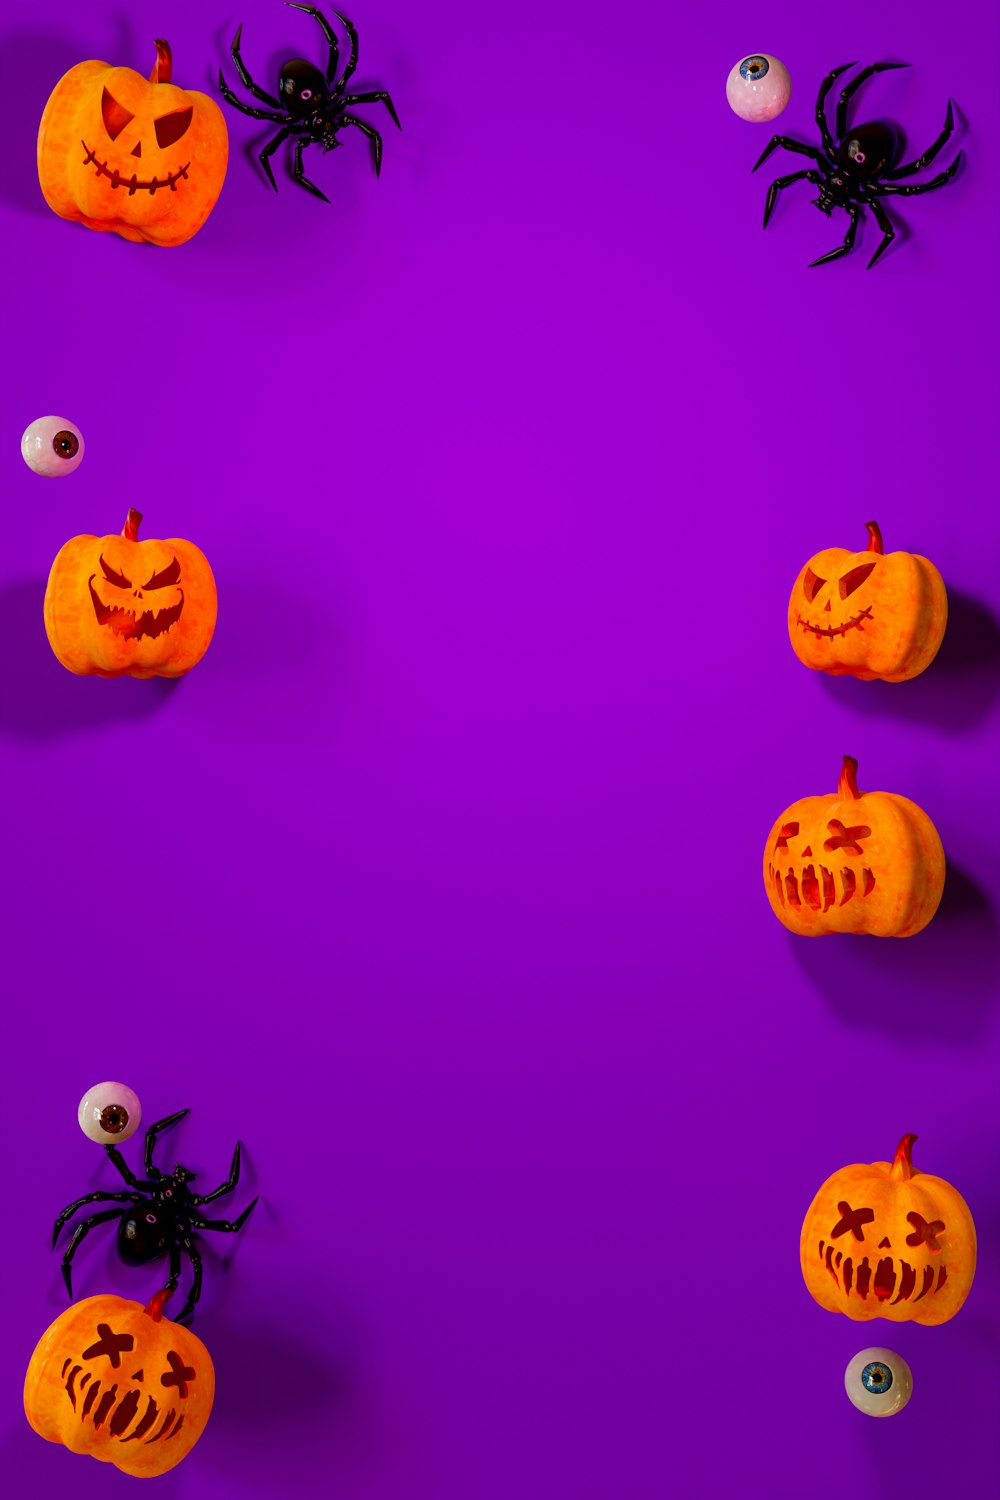 Halloween Wallpapers: Cùng chiêm ngưỡng những hình nền tuyệt đẹp về lễ hội Halloween để cảm nhận được bầu không khí kì bí, kinh dị của ngày đại lễ này. Từ những hình ảnh ma quỷ đến những bức hình đáng yêu về bí ngô, bạn sẽ không thể nào bỏ qua những hình nền đẹp nhất để trang trí Desktop của mình.